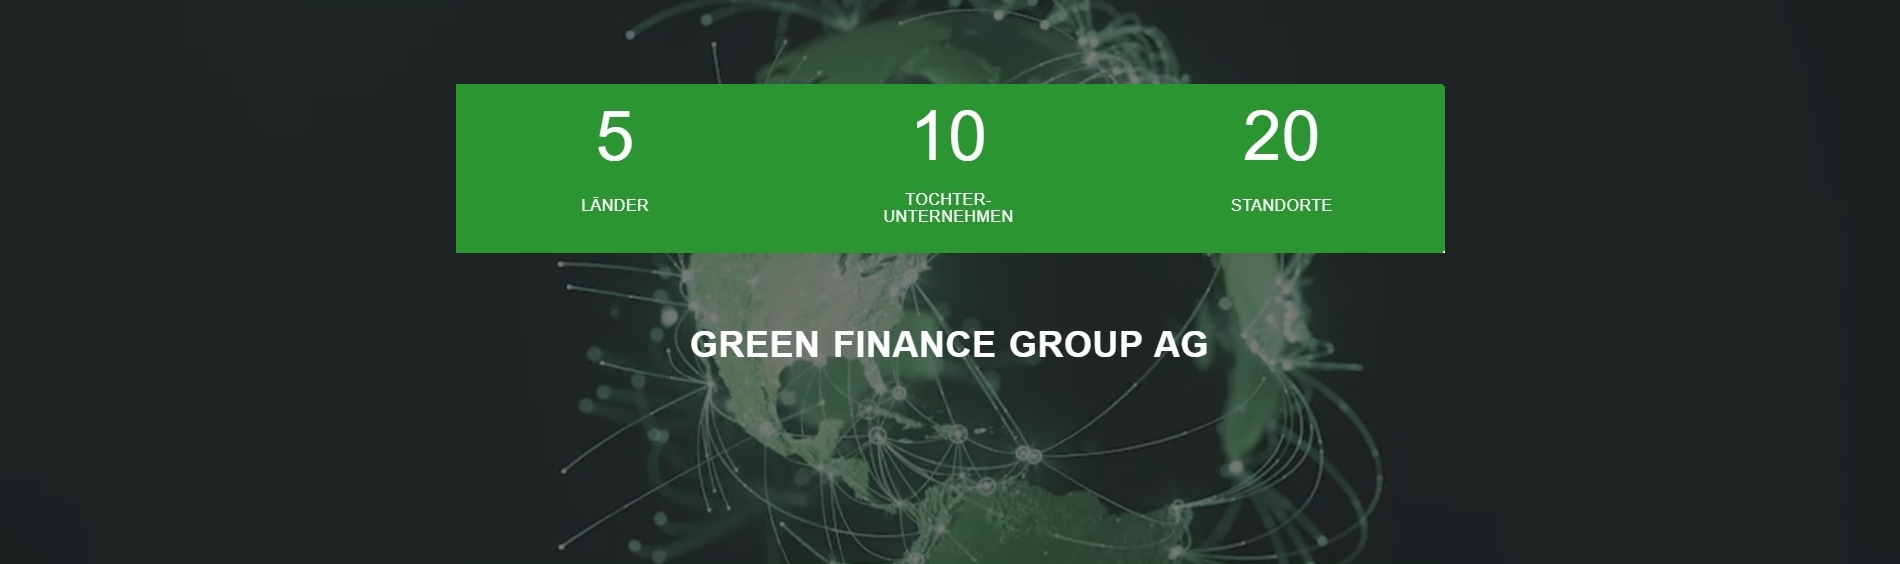 Green Finance Broker AG Hero Image